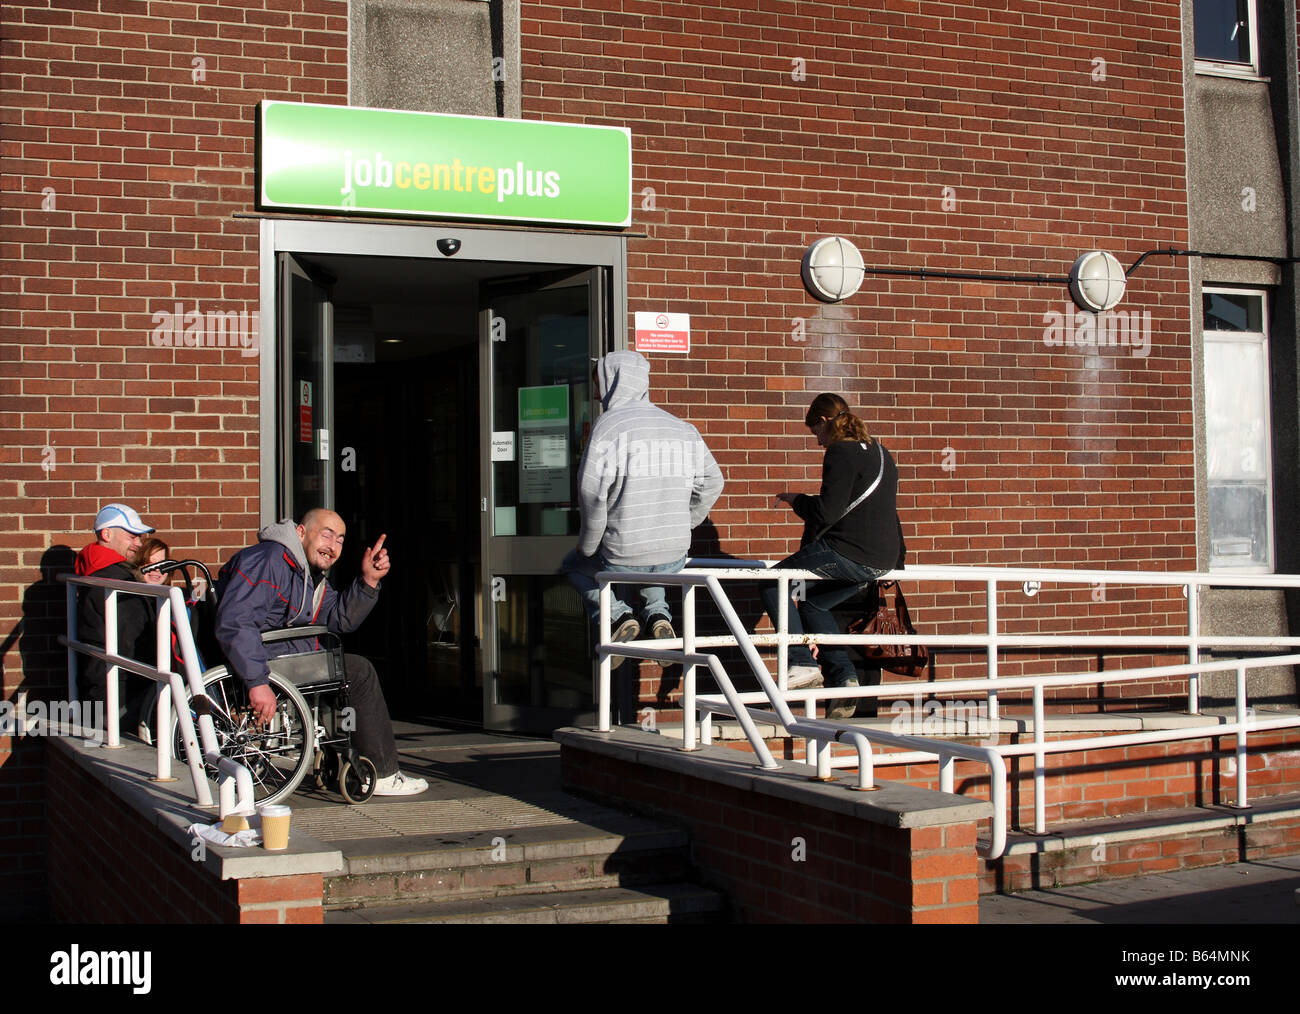 Les gens qui attendent à l'extérieur d'un Job Centre Plus, Station Street, Nottingham, Angleterre, Royaume-Uni Banque D'Images